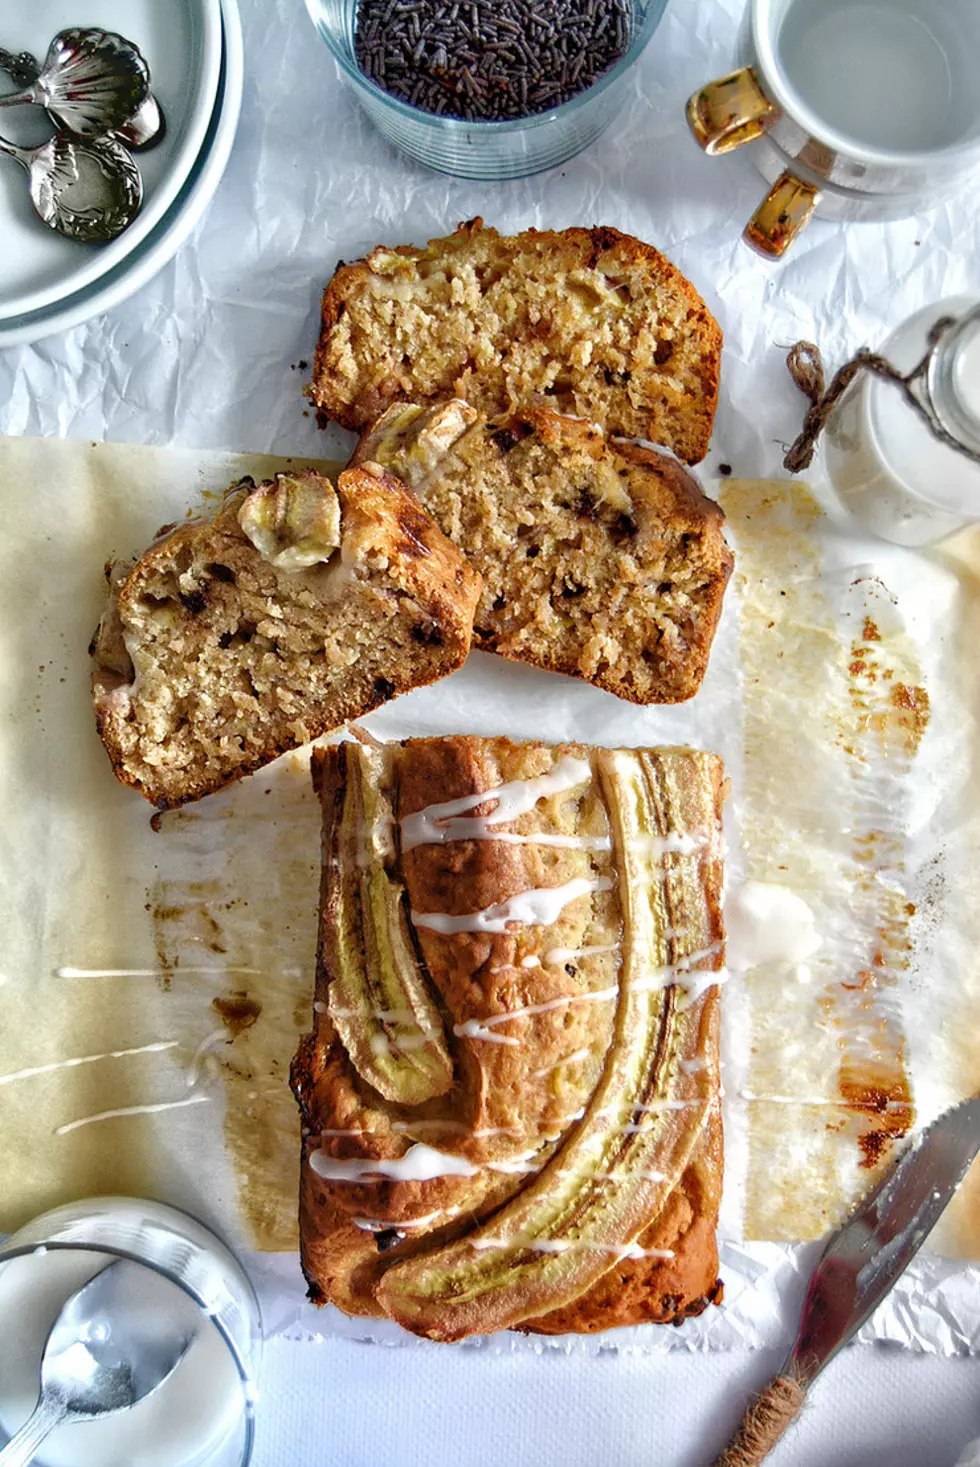 Sweet and Easy Vegan Banana Bread Recipe to Make for Breakfast or Dessert